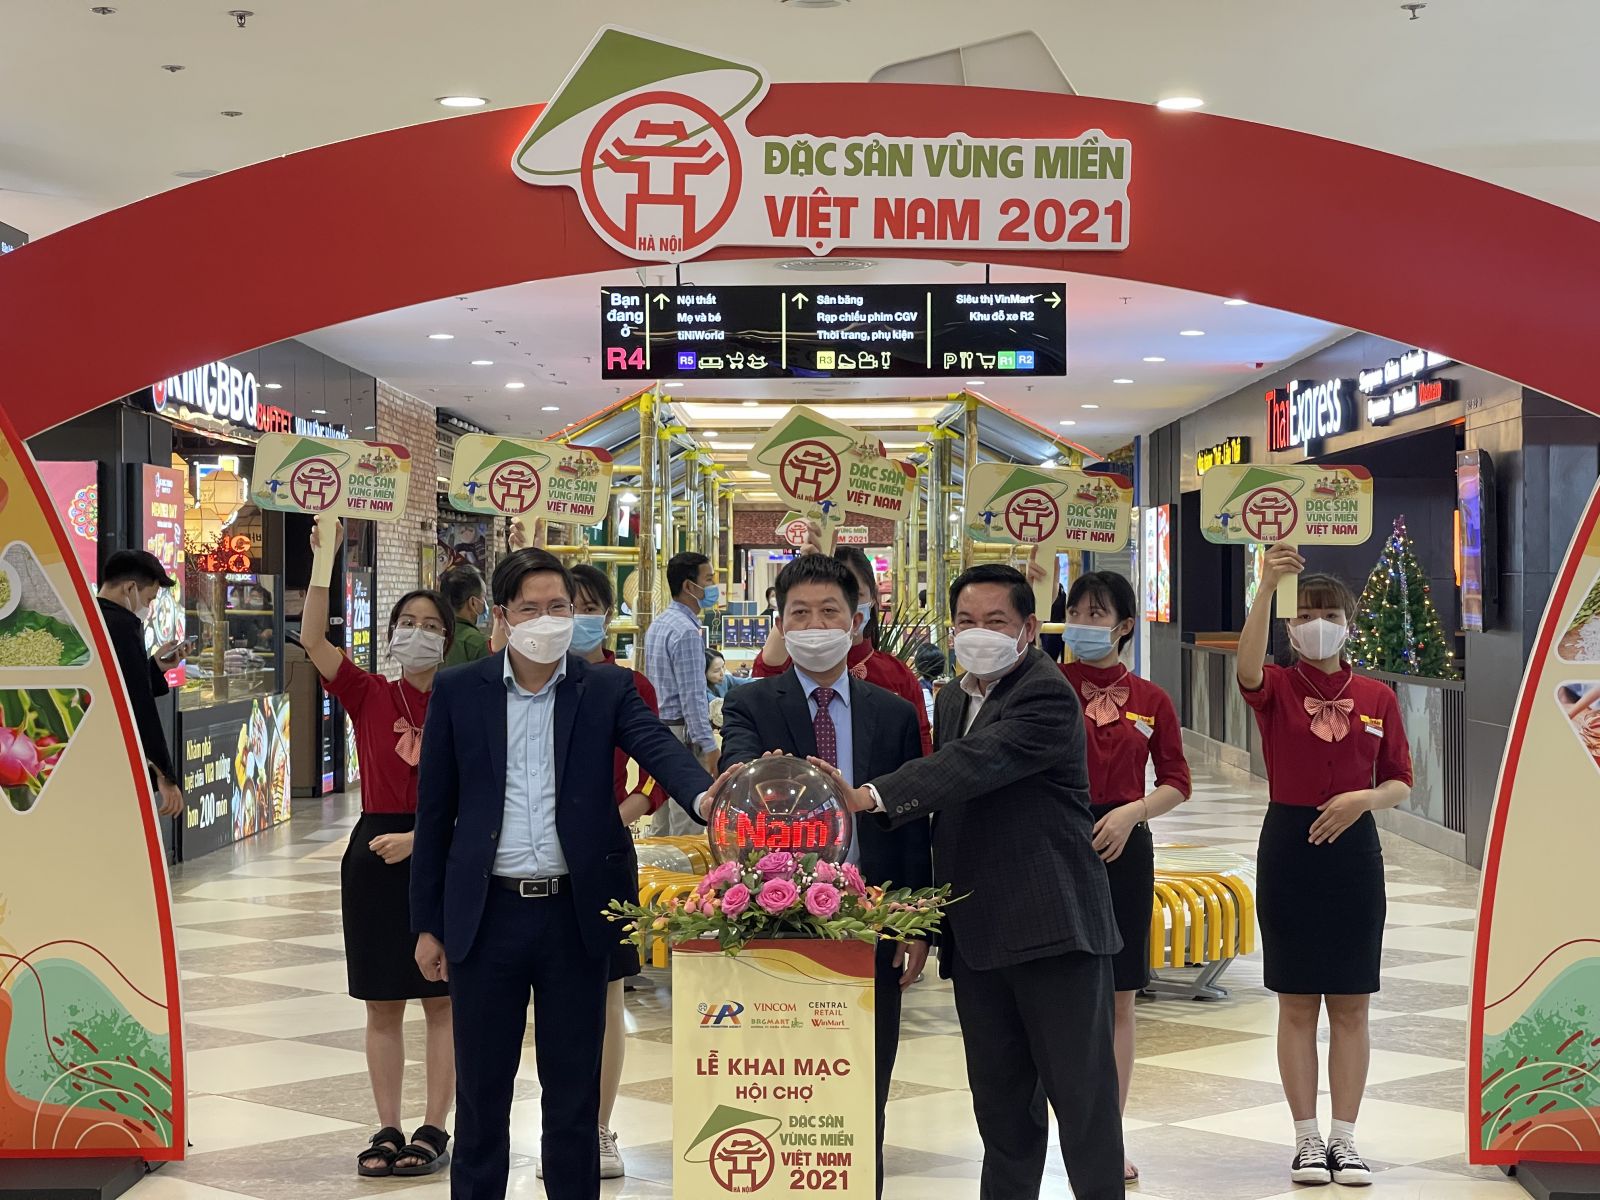 Hội chợ đặc sản vùng miền Việt Nam 2021